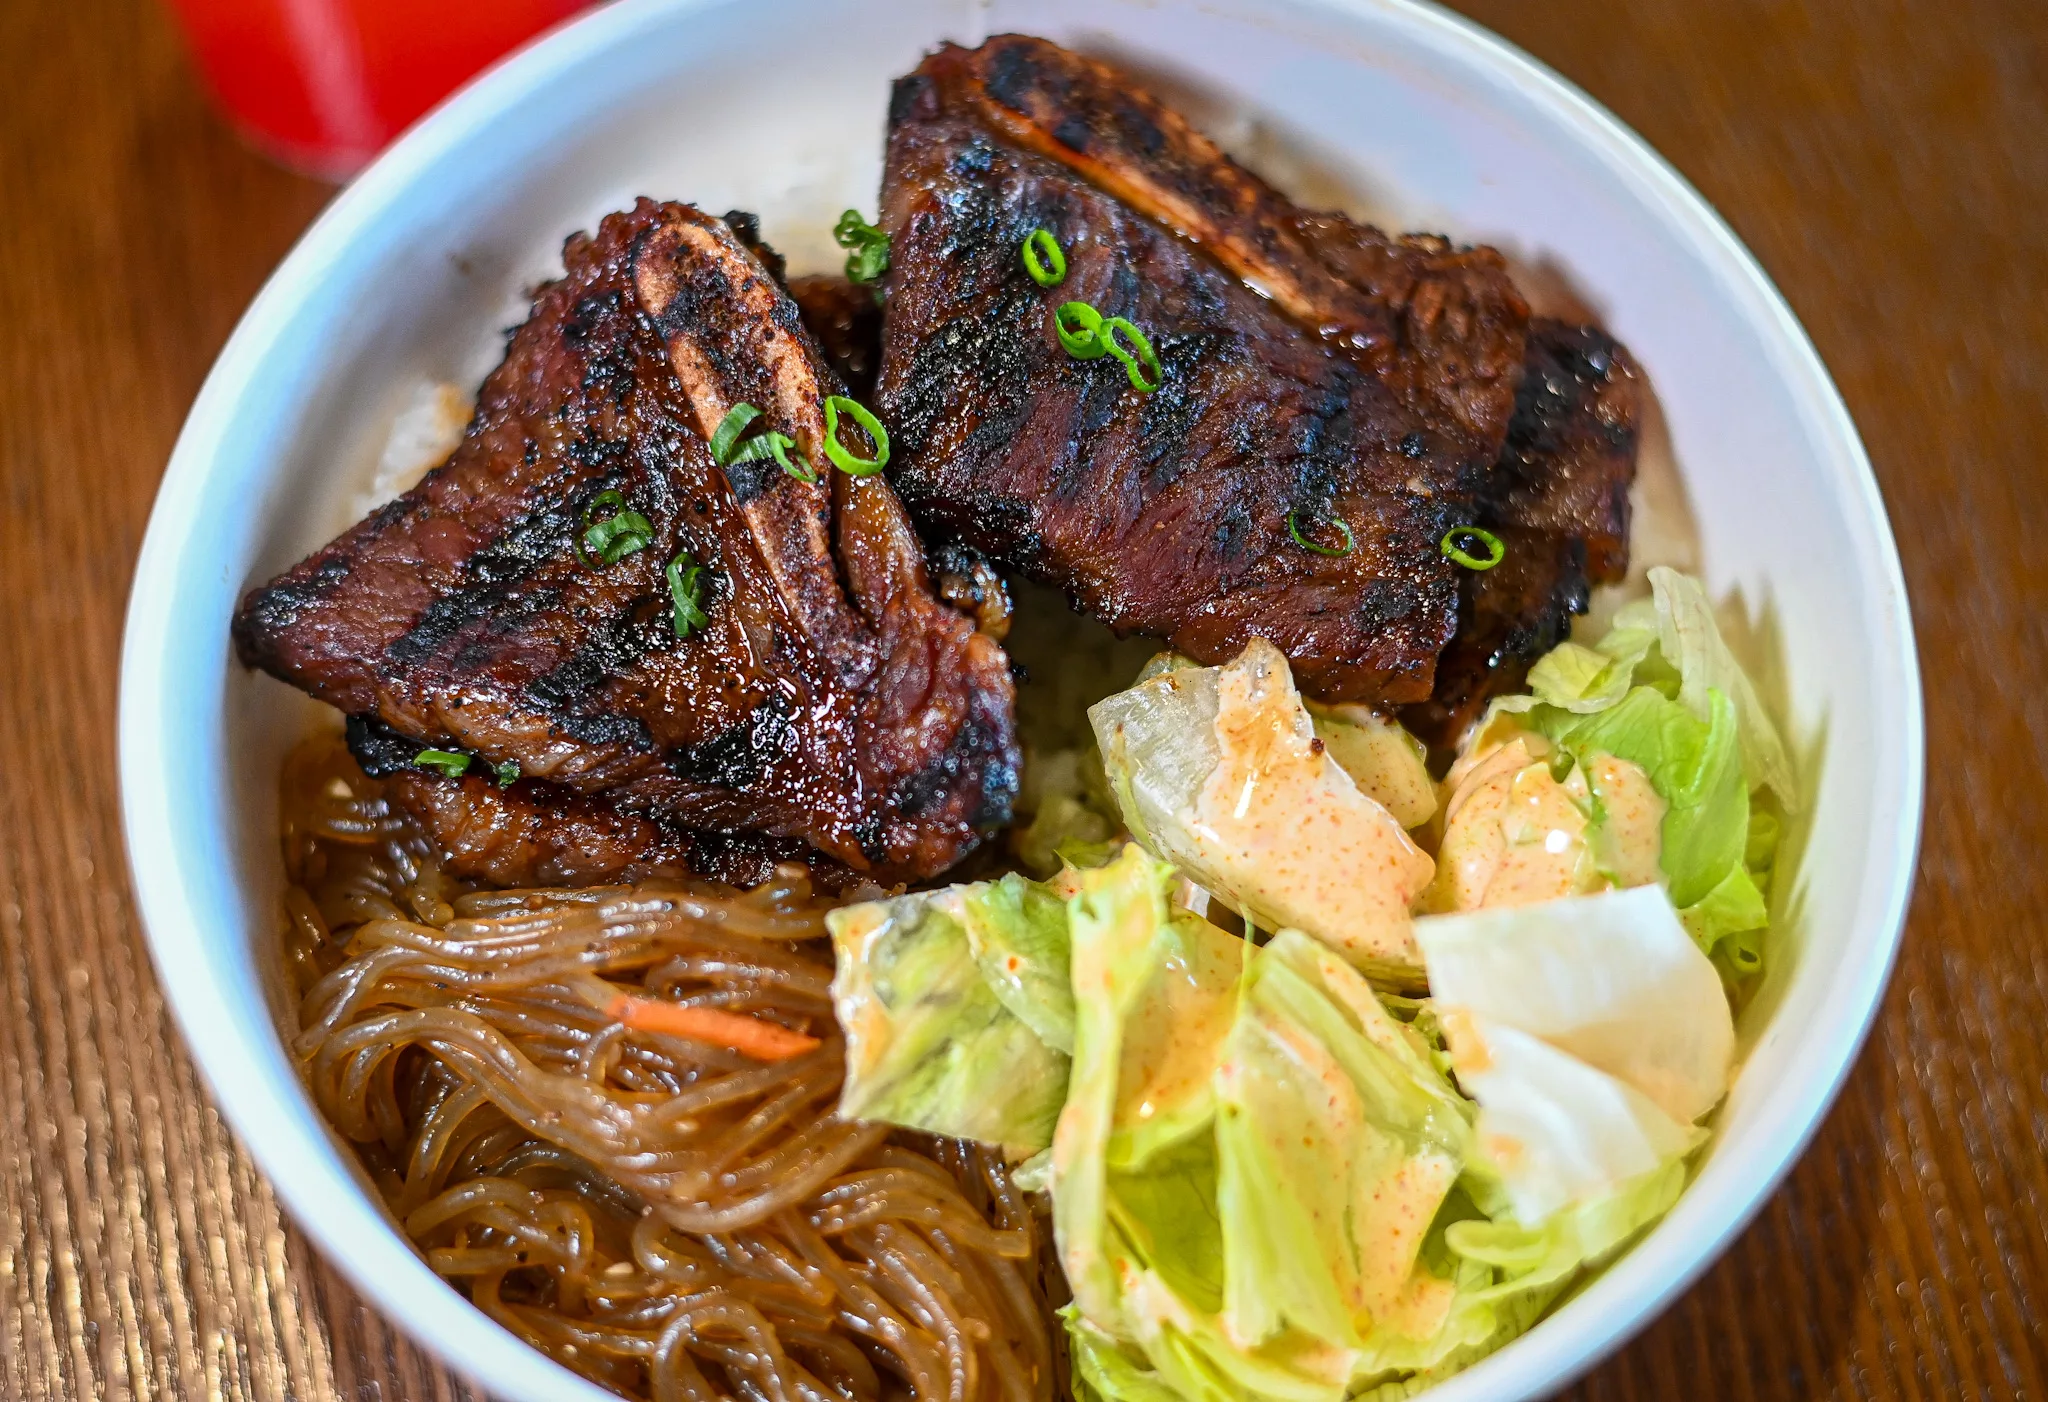 New K-Bop location brings Korean food to Cherokee Street